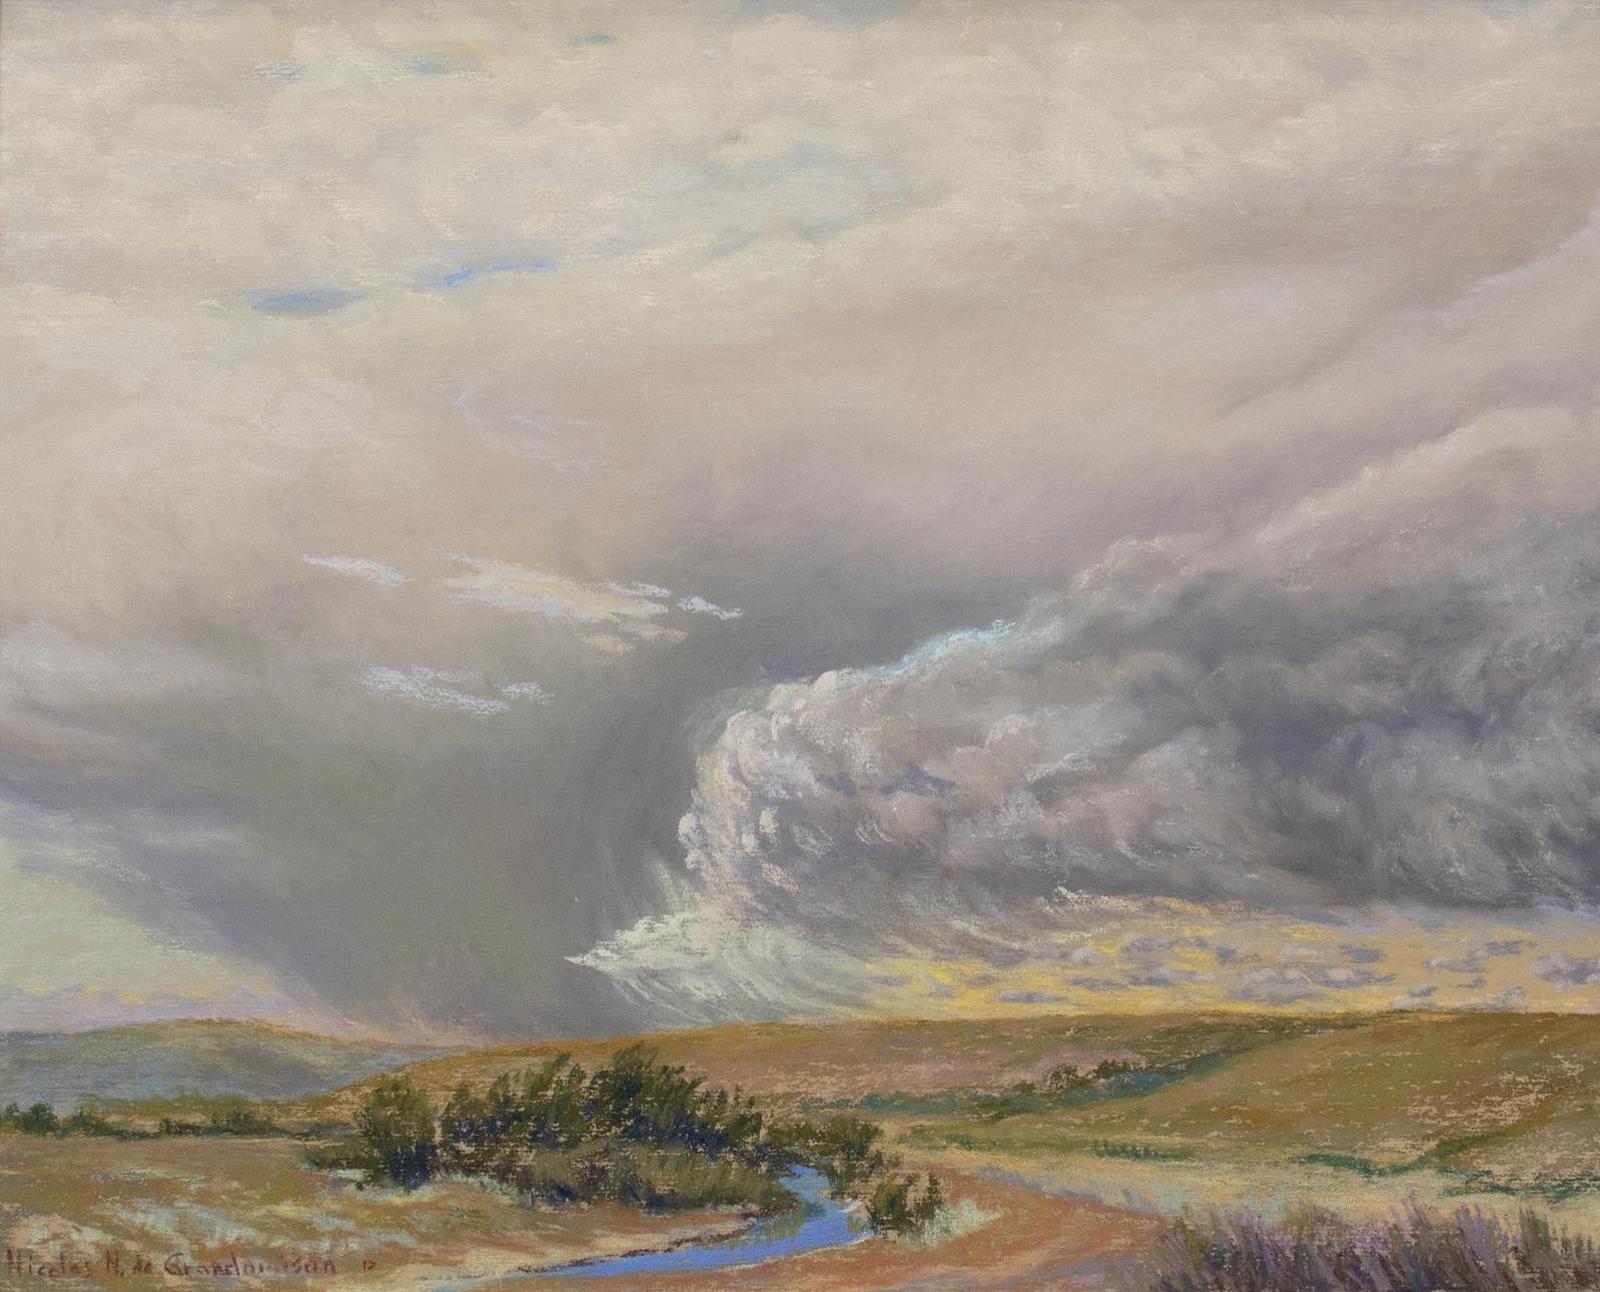 Nicolas N. (Jr.) de Grandmaison (1938) - Foothills Landscape With Dramatic Sky